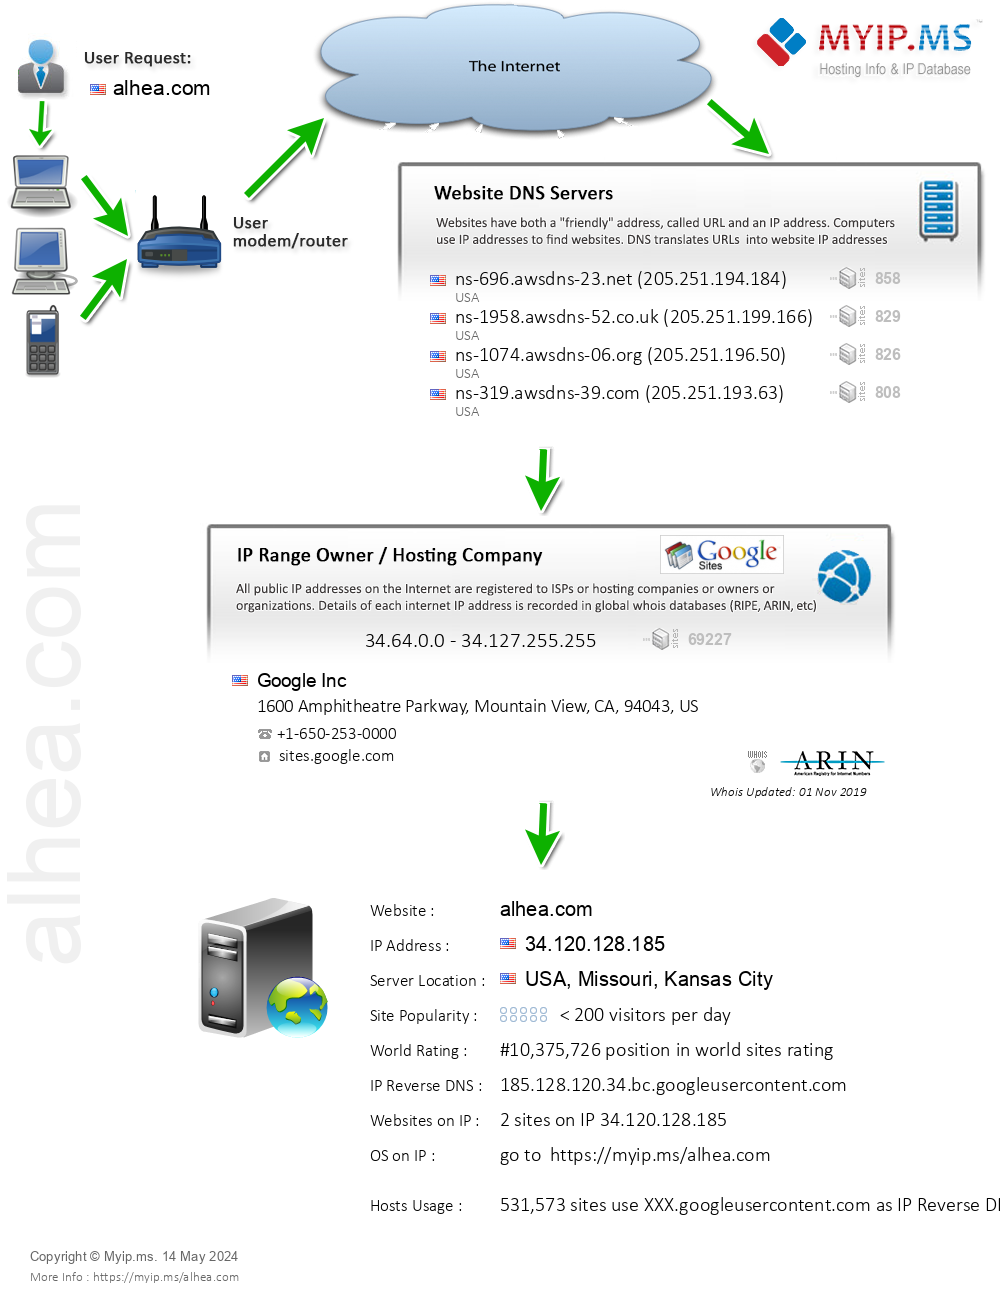 Alhea.com - Website Hosting Visual IP Diagram